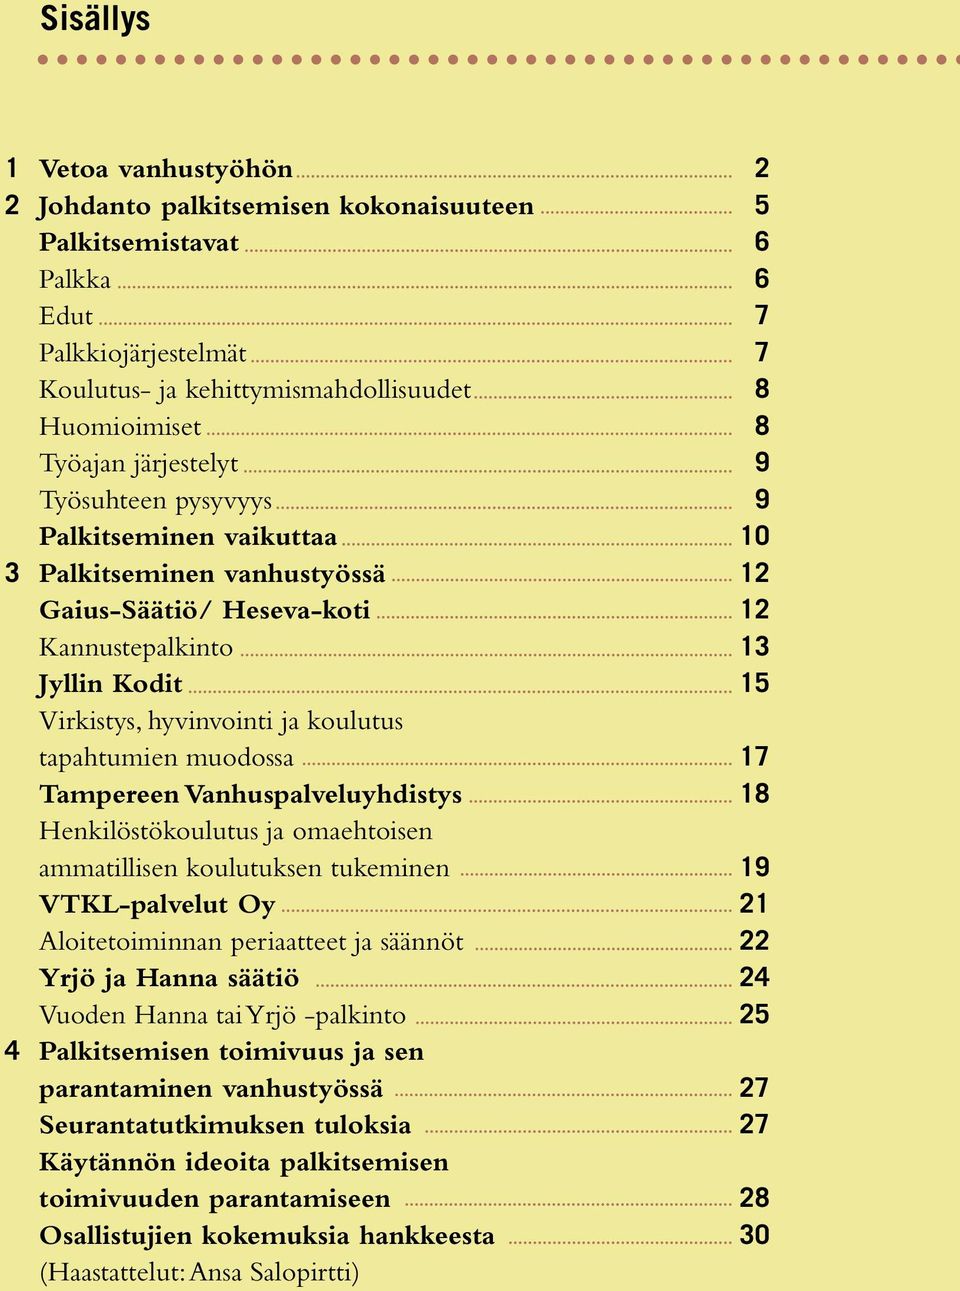 tapahtumien muodossa 17 Tampereen Vanhuspalveluyhdistys 18 Henkilöstökoulutus ja omaehtoisen ammatillisen koulutuksen tukeminen 19 VTKL-palvelut Oy 21 Aloitetoiminnan periaatteet ja säännöt 22 Yrjö